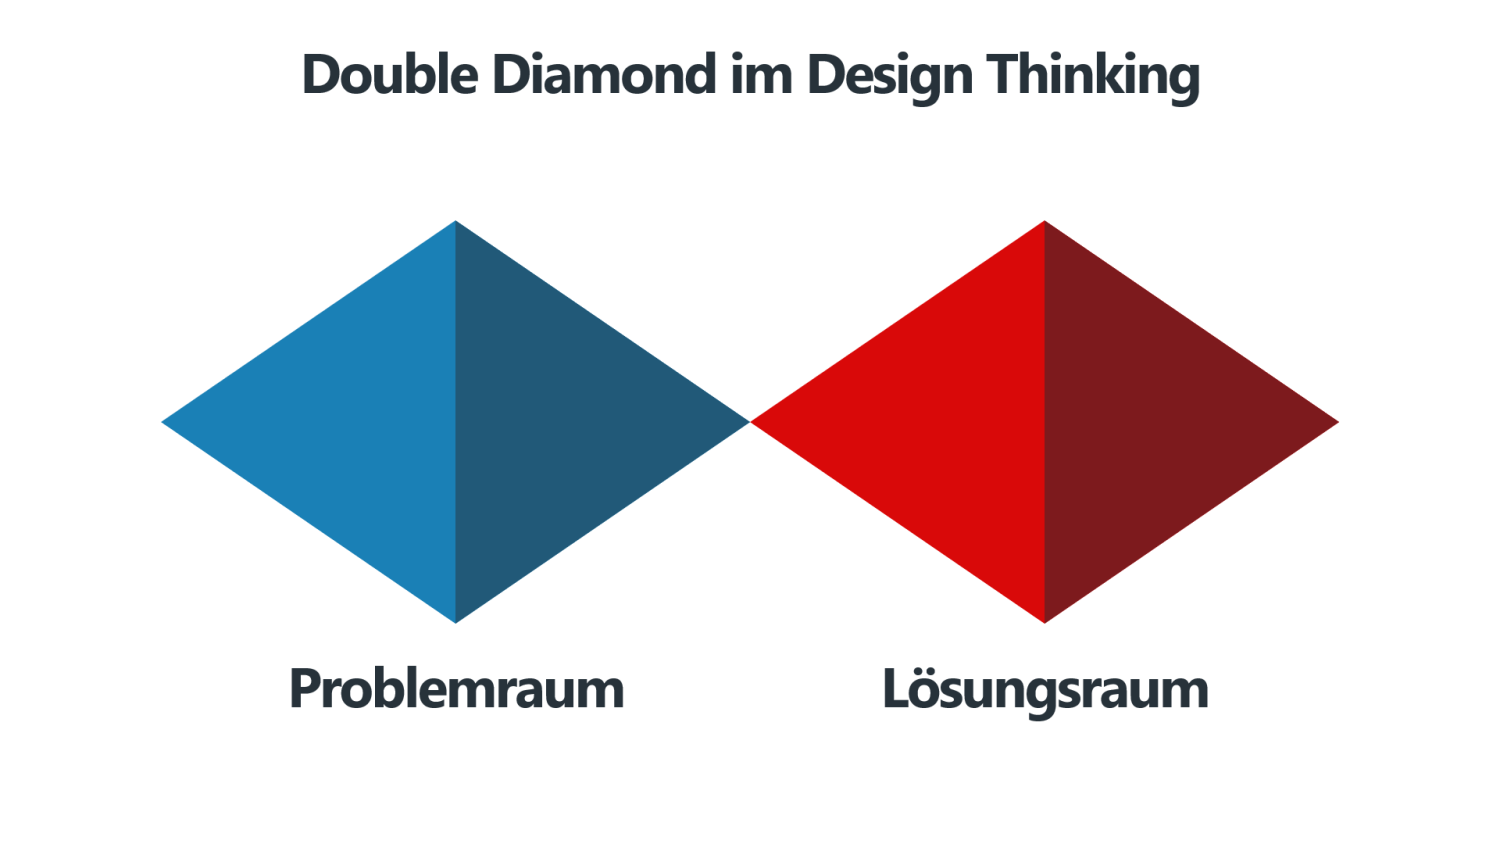 Double Diamond - Problemraum und Lösungsraum im Design Thinking